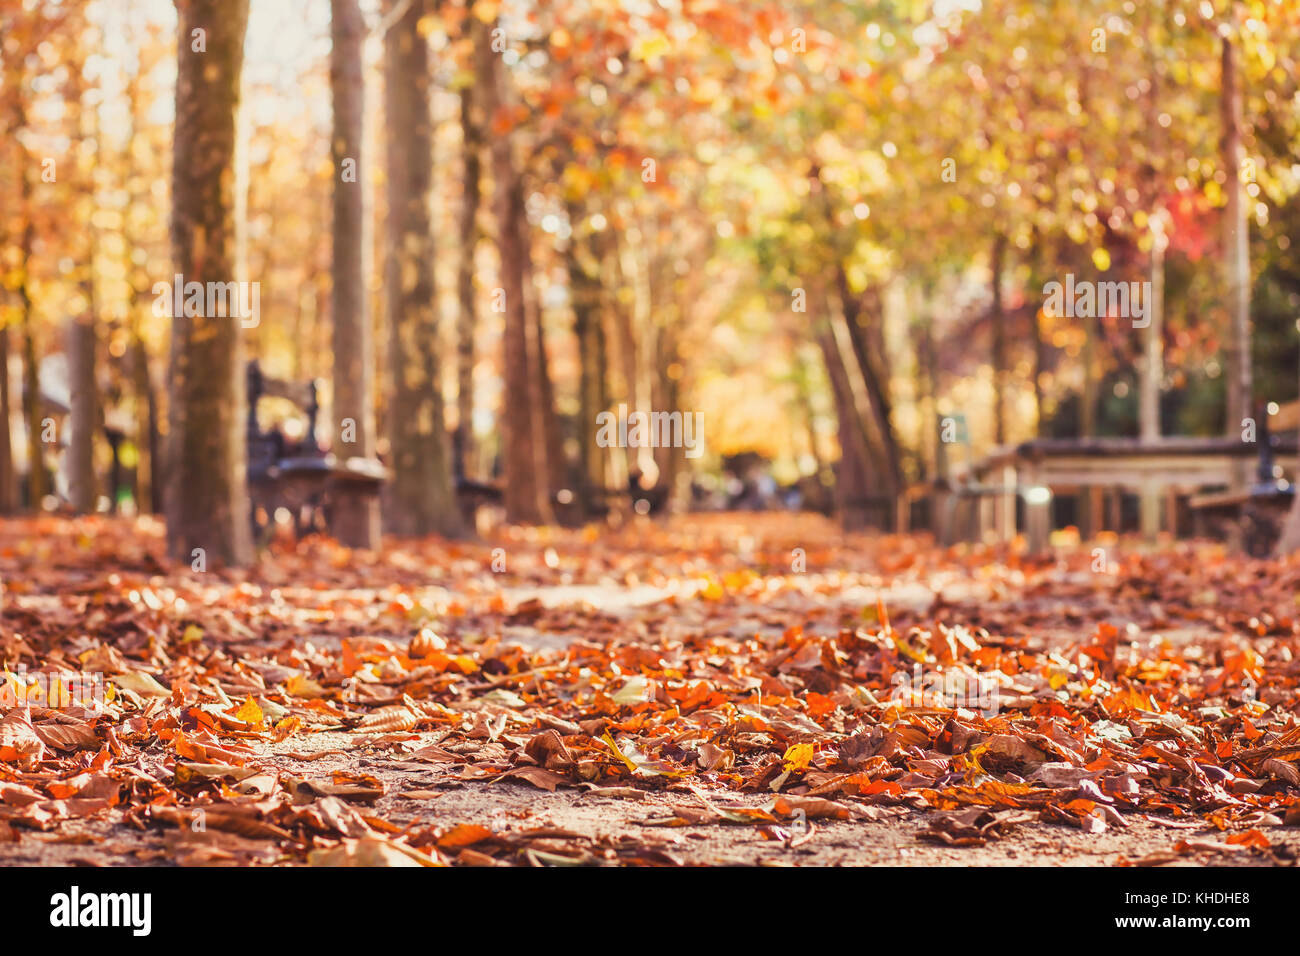 Herbst park Hintergrund, gelbe Blätter im Herbst Saison Stockfoto